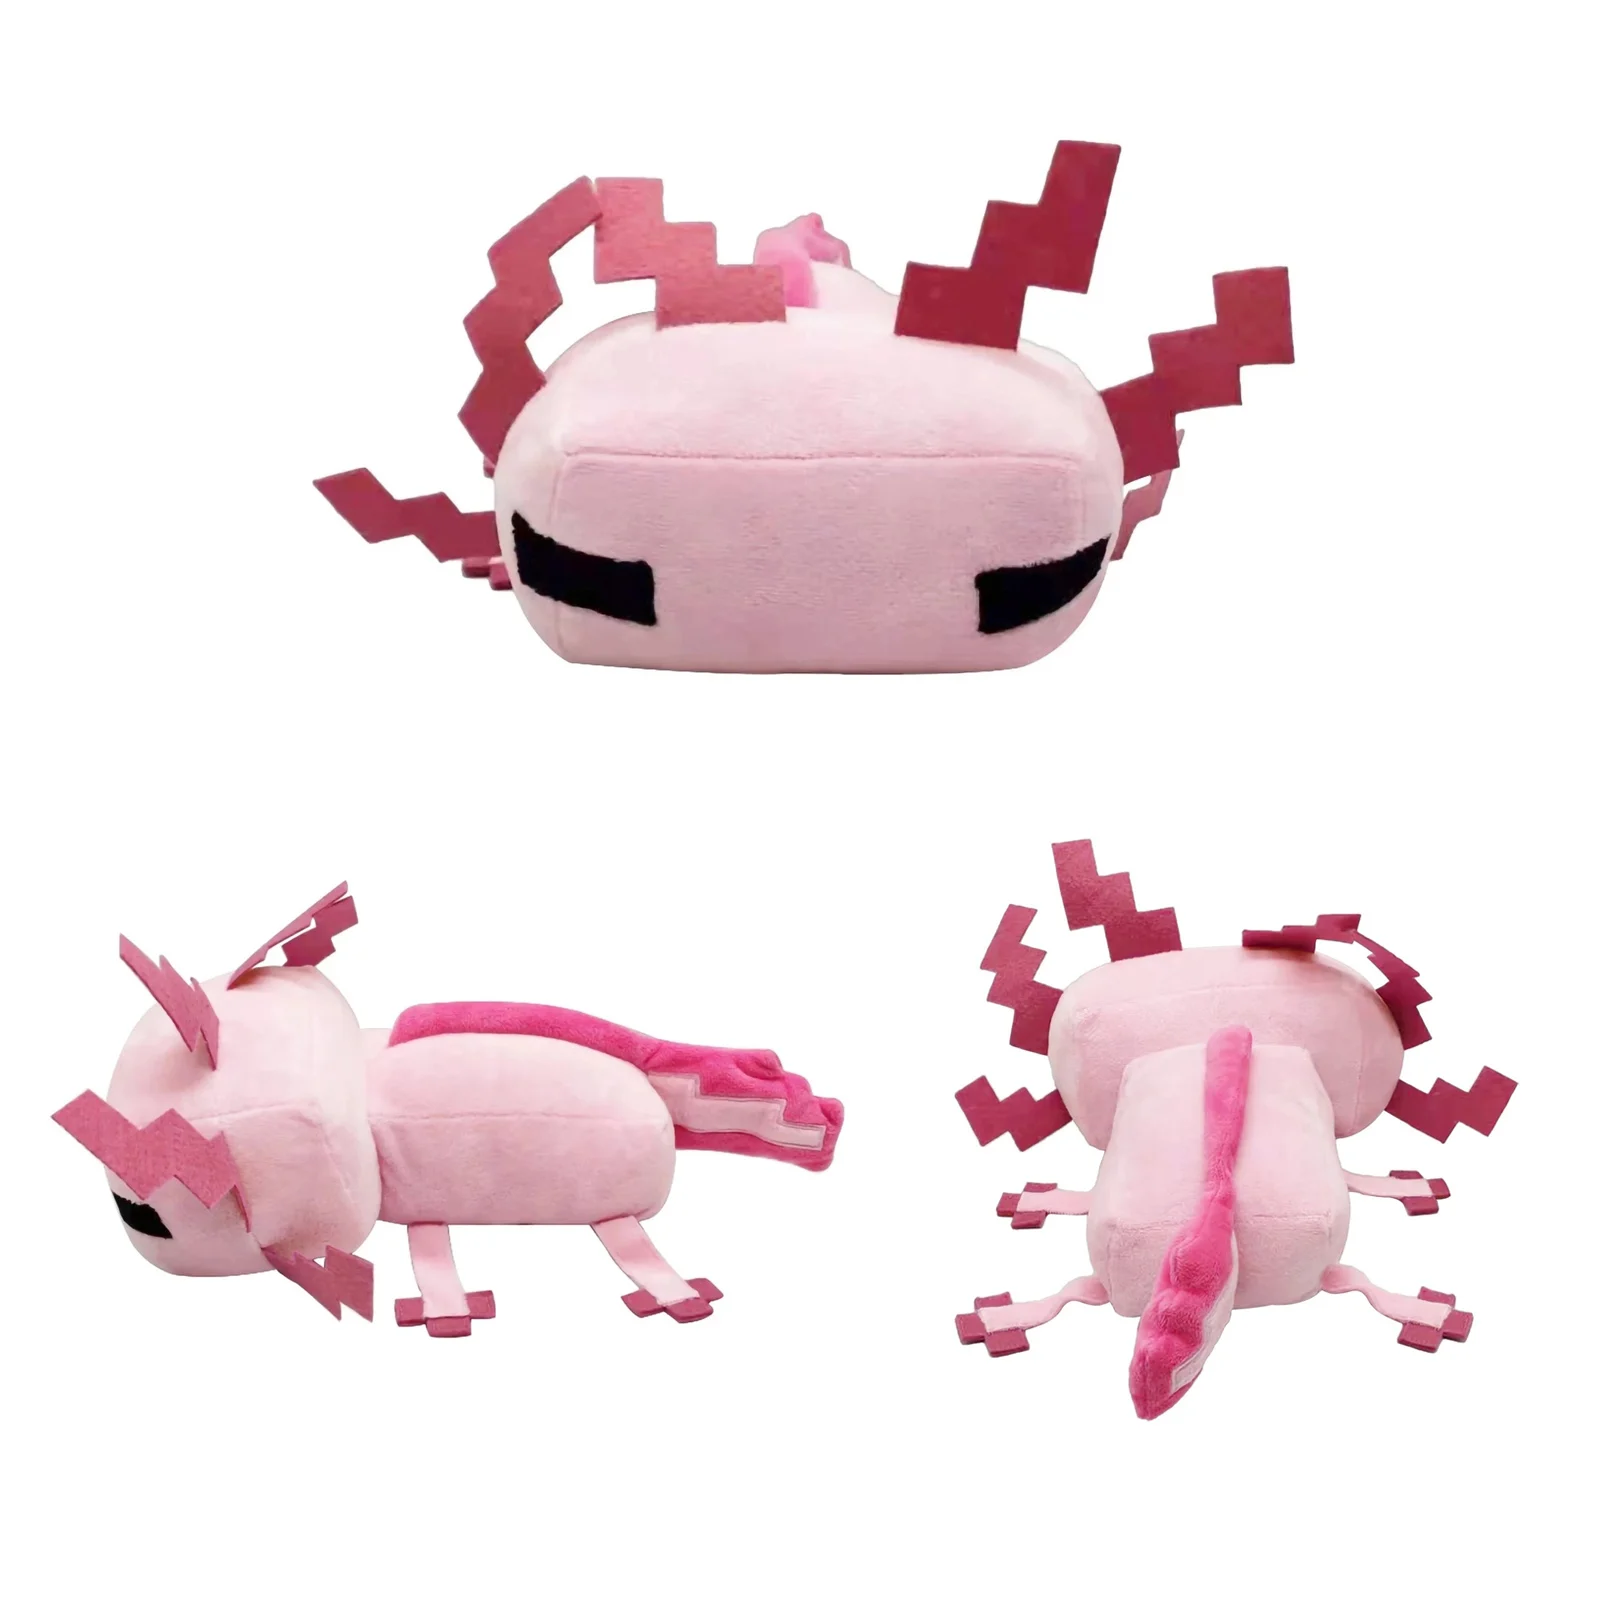 

Плюшевая игрушка розовая Axolotl, мягкая плюшевая кукла, мультяшная фигурка, плюшевые игрушки для детей и взрослых, подарок для любителей плюша...